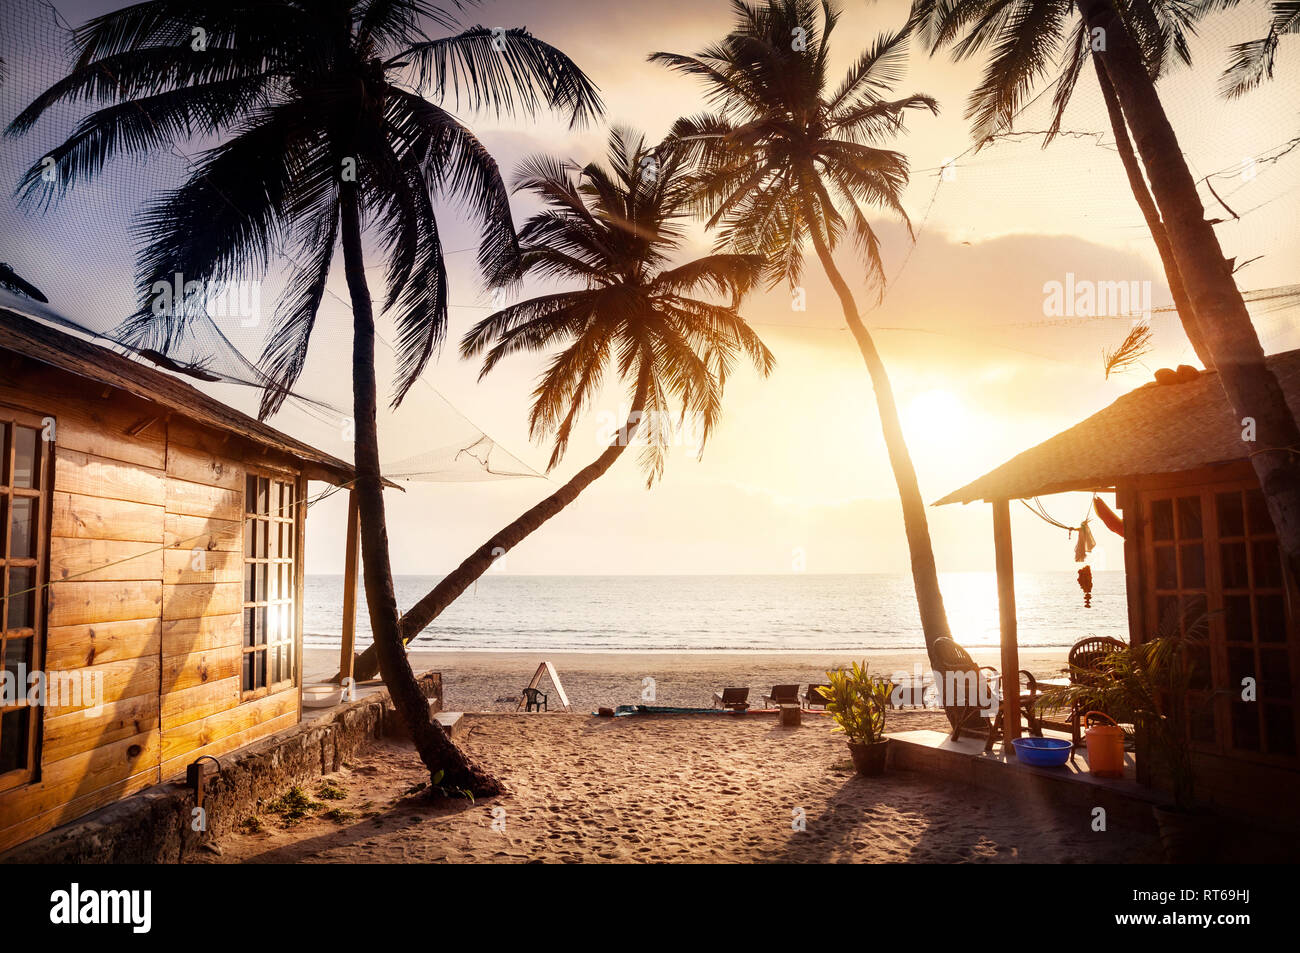 Chalet en bois avec vue sur la mer en complexe hôtelier tropical avec des cocotiers et des transats sur la plage au coucher du soleil Banque D'Images